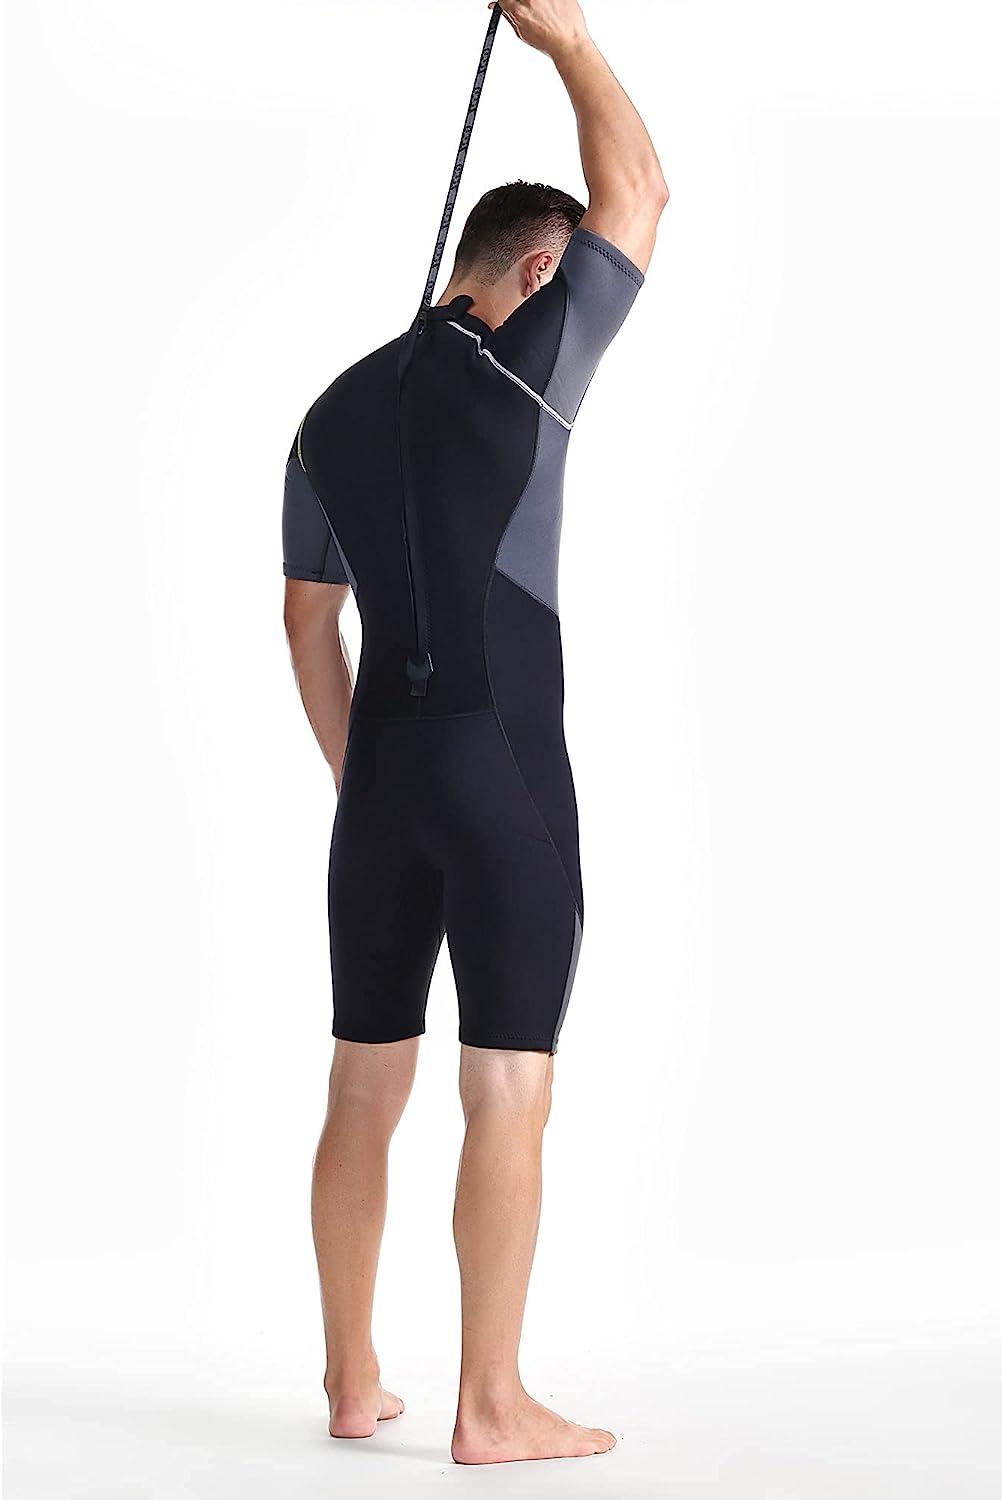 ZCCO Men's Shorty Wetsuits 1.5mm Premium Neoprene Back Zip Short